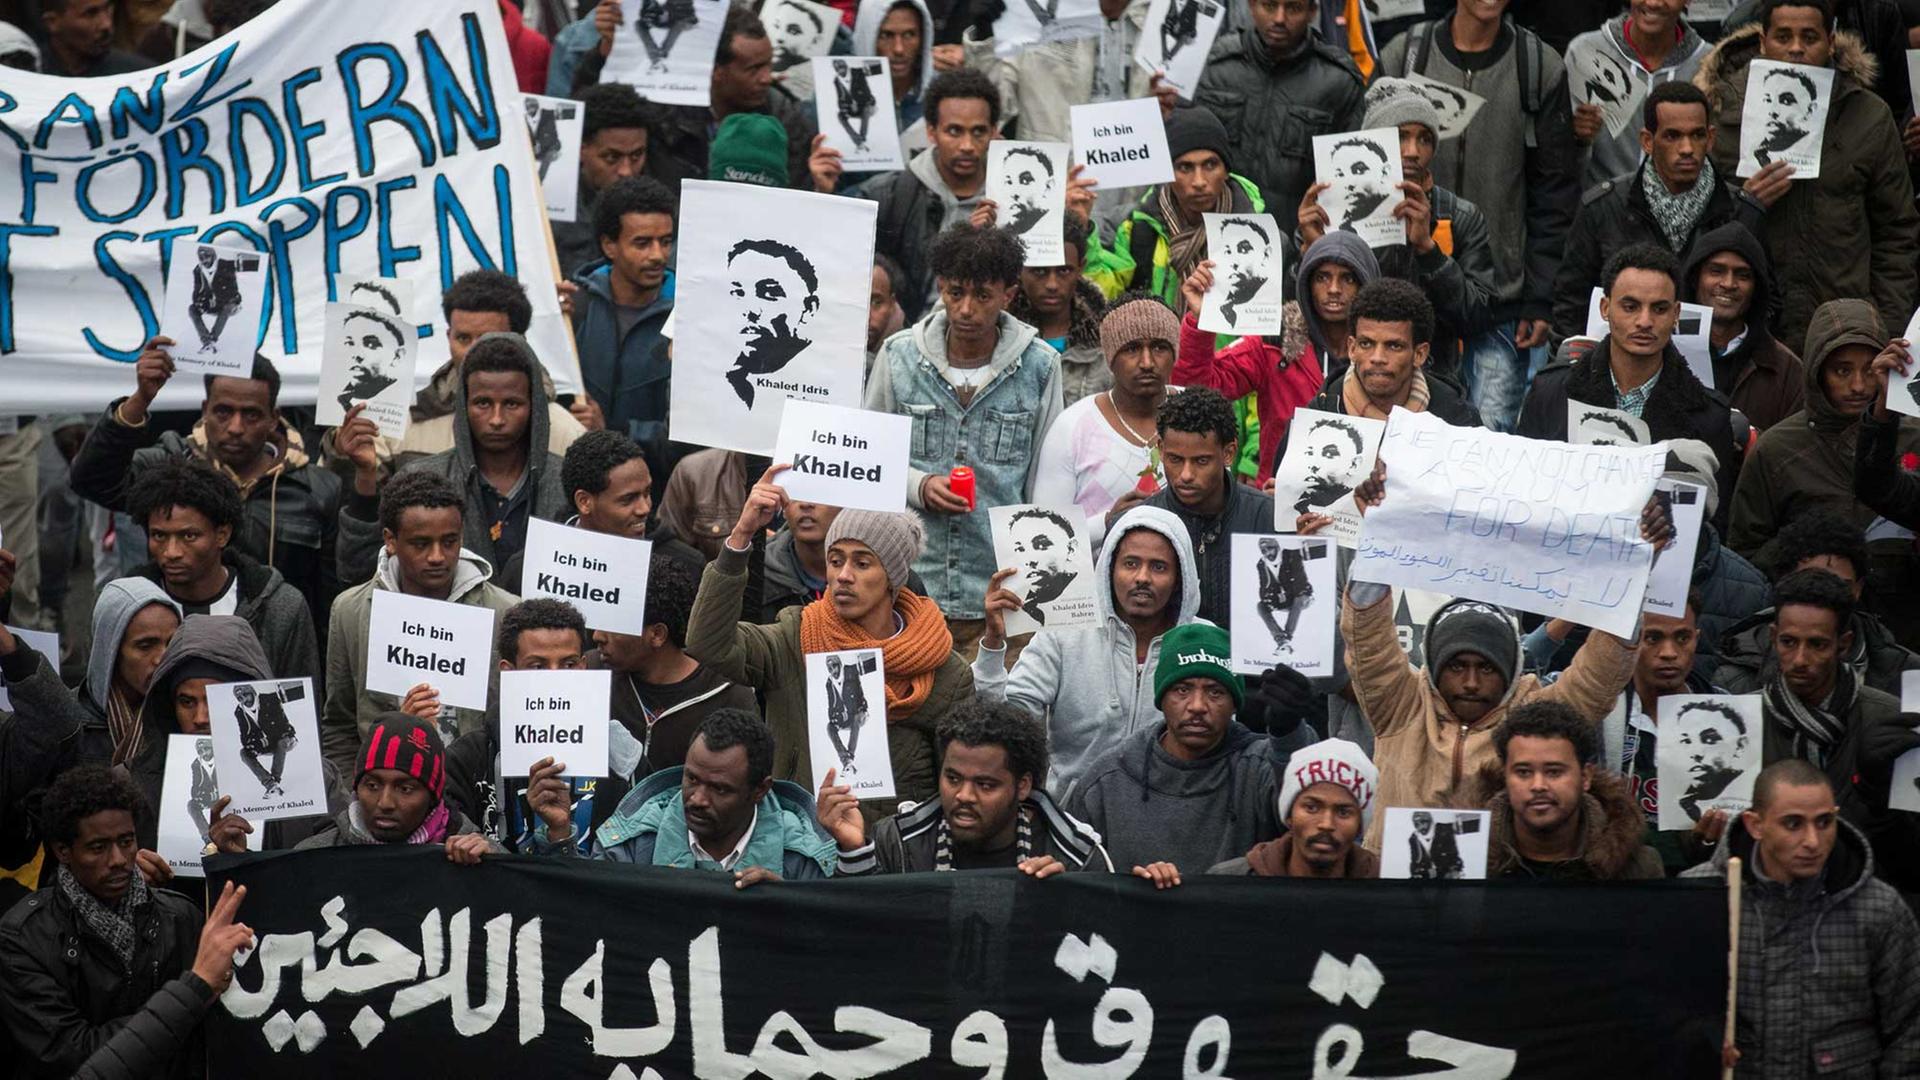 Flüchtlinge, Migranten und Deutsche demonstrieren am 17.01.2015 in der Innenstadt in Dresden (Sachsen), um auf den gewaltsamen Tod von Khaled Idris Bahray aus Eritrea aufmerksam zu machen.